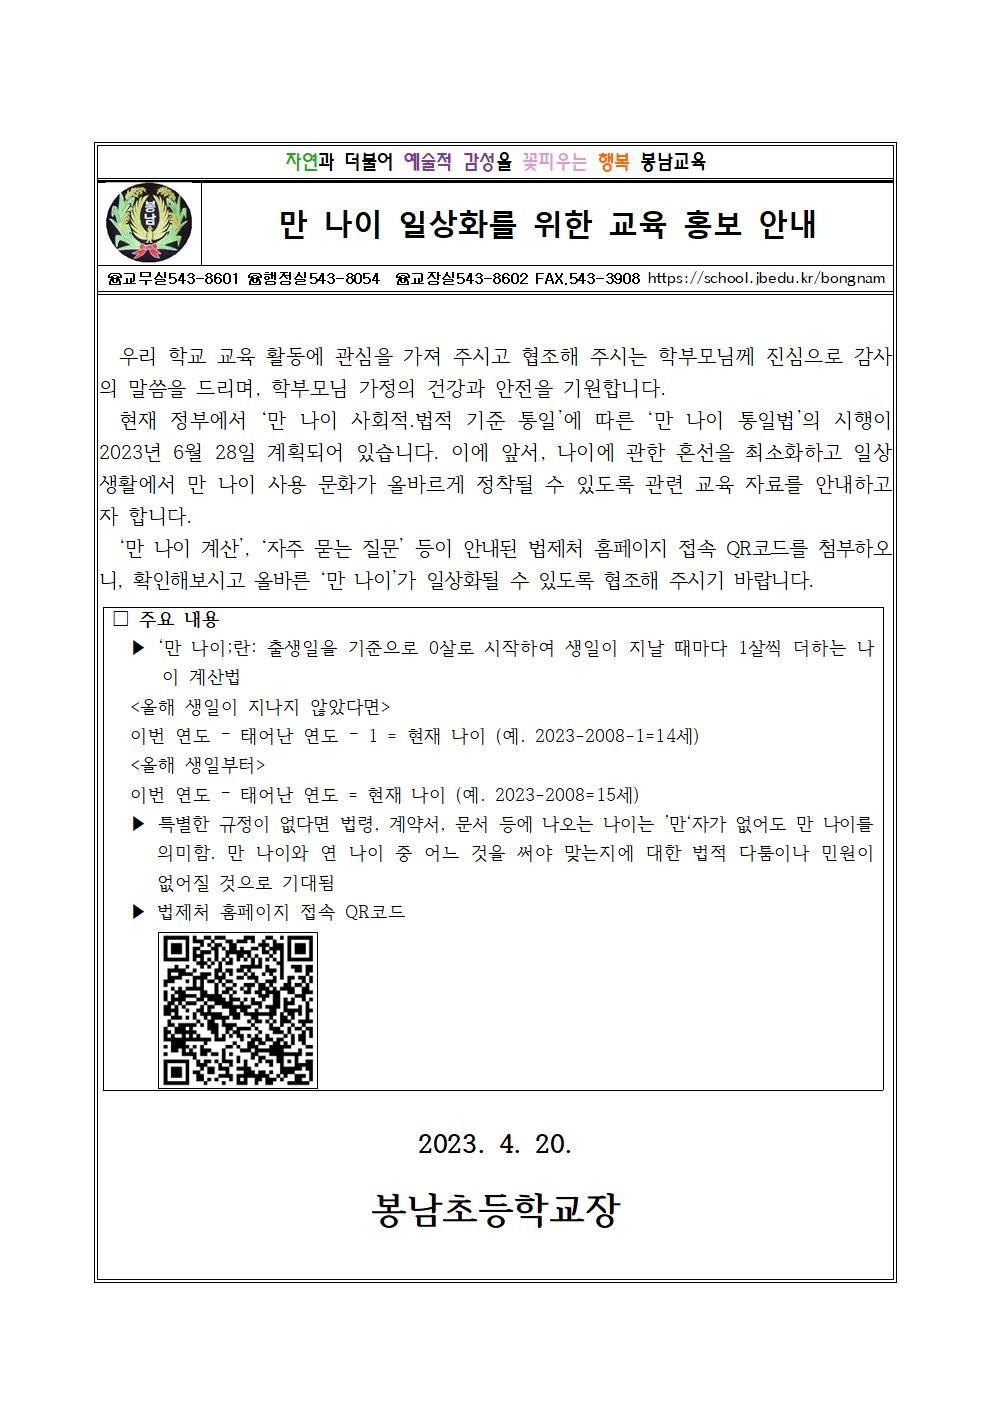 봉남초 가정통신문(만 나이 사용을 위한 교육 홍보 안내장)001